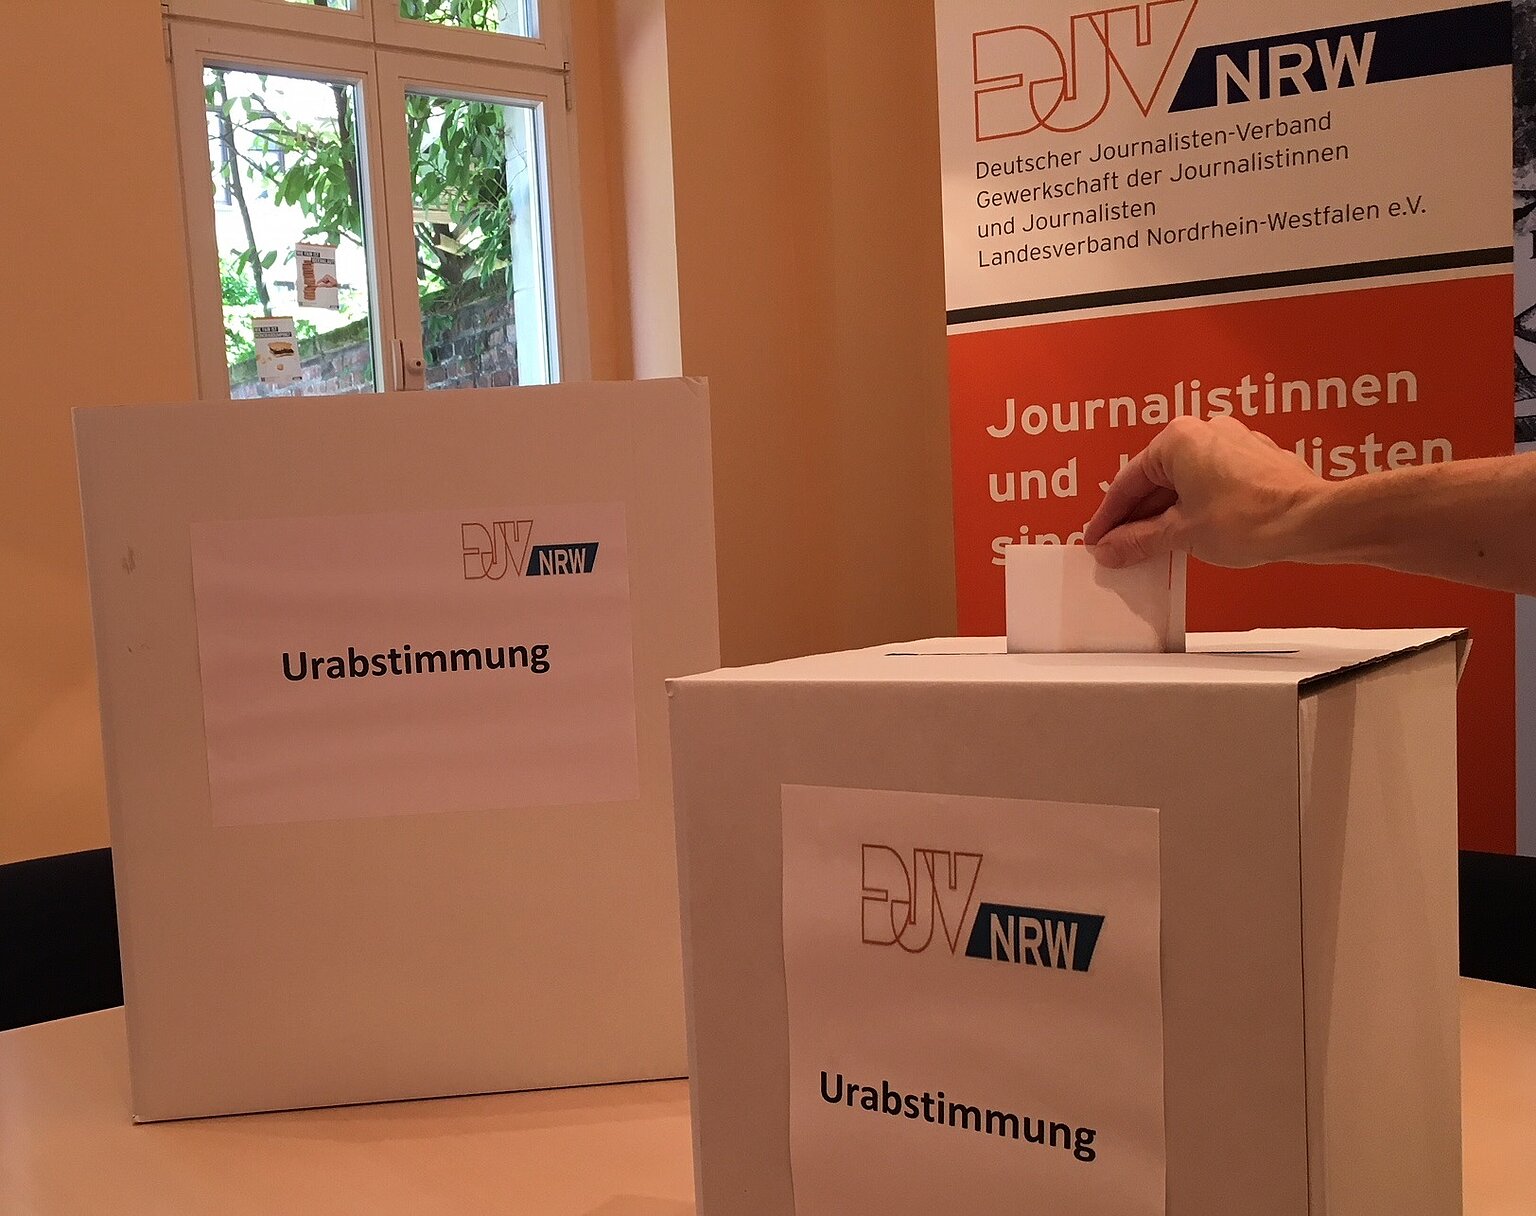  – Urabstimmung in der Geschäftsstelle des DJV-NRW